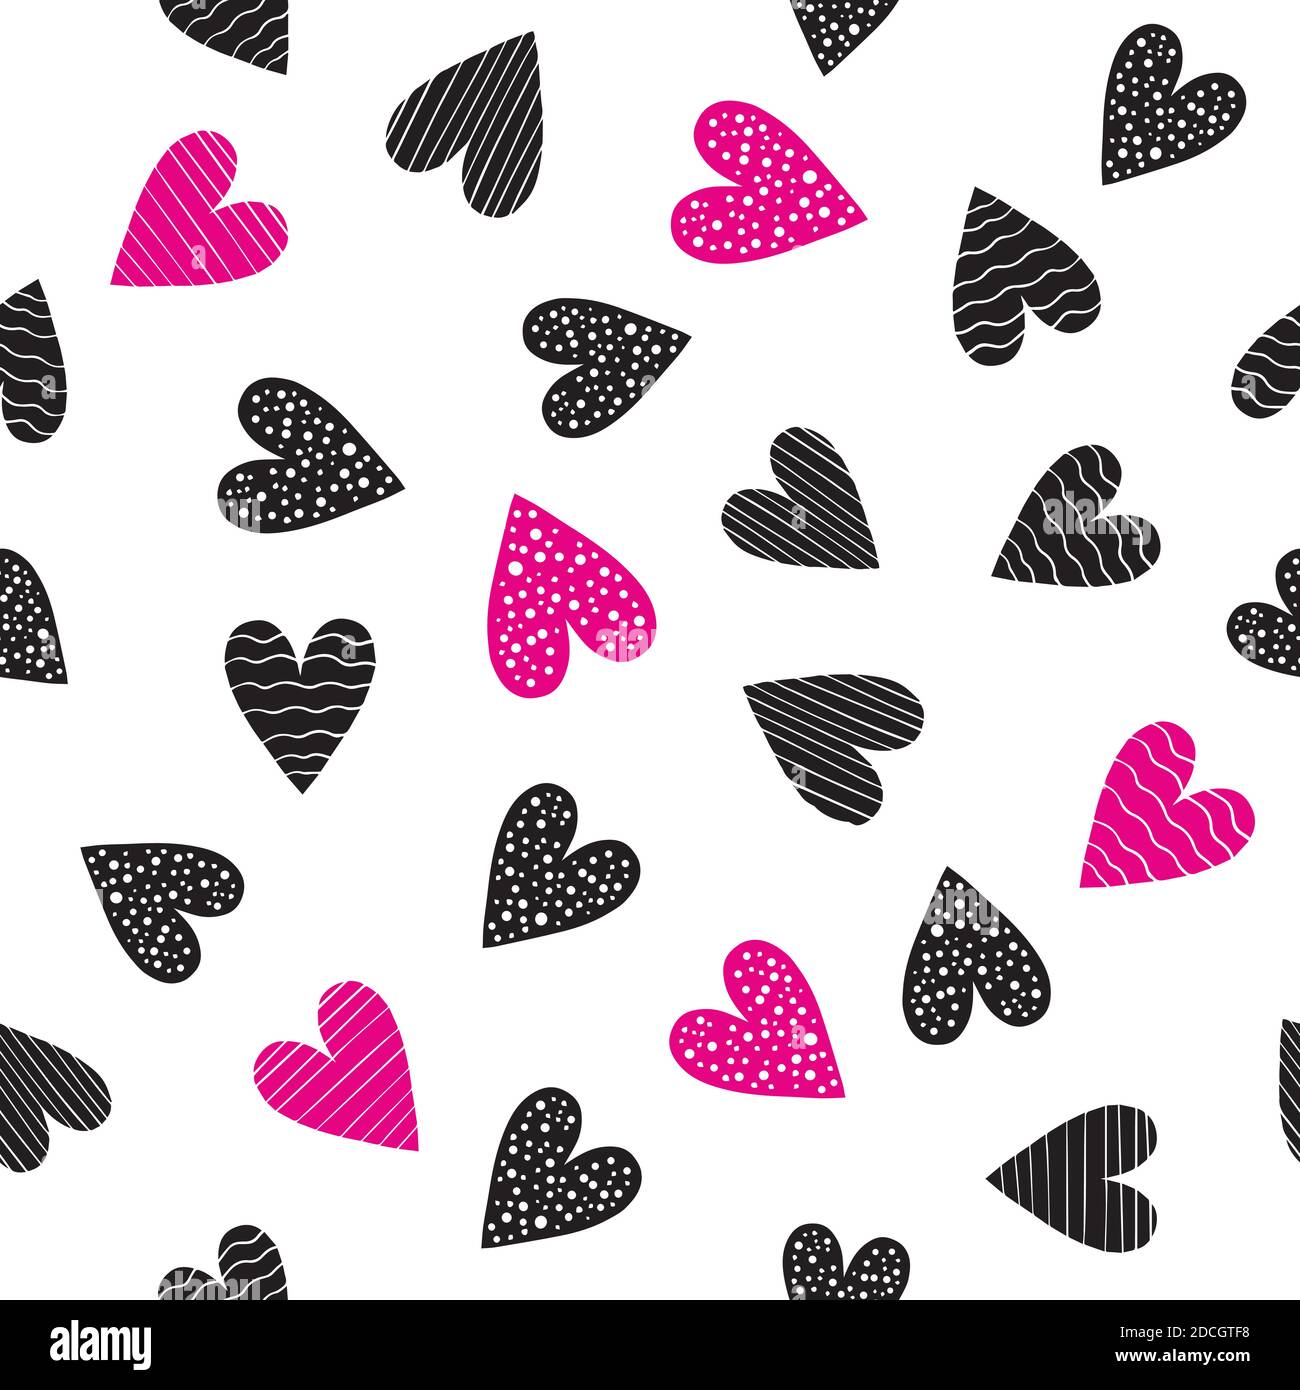 Free Black Heart Background  EPS Illustrator JPG SVG  Templatenet